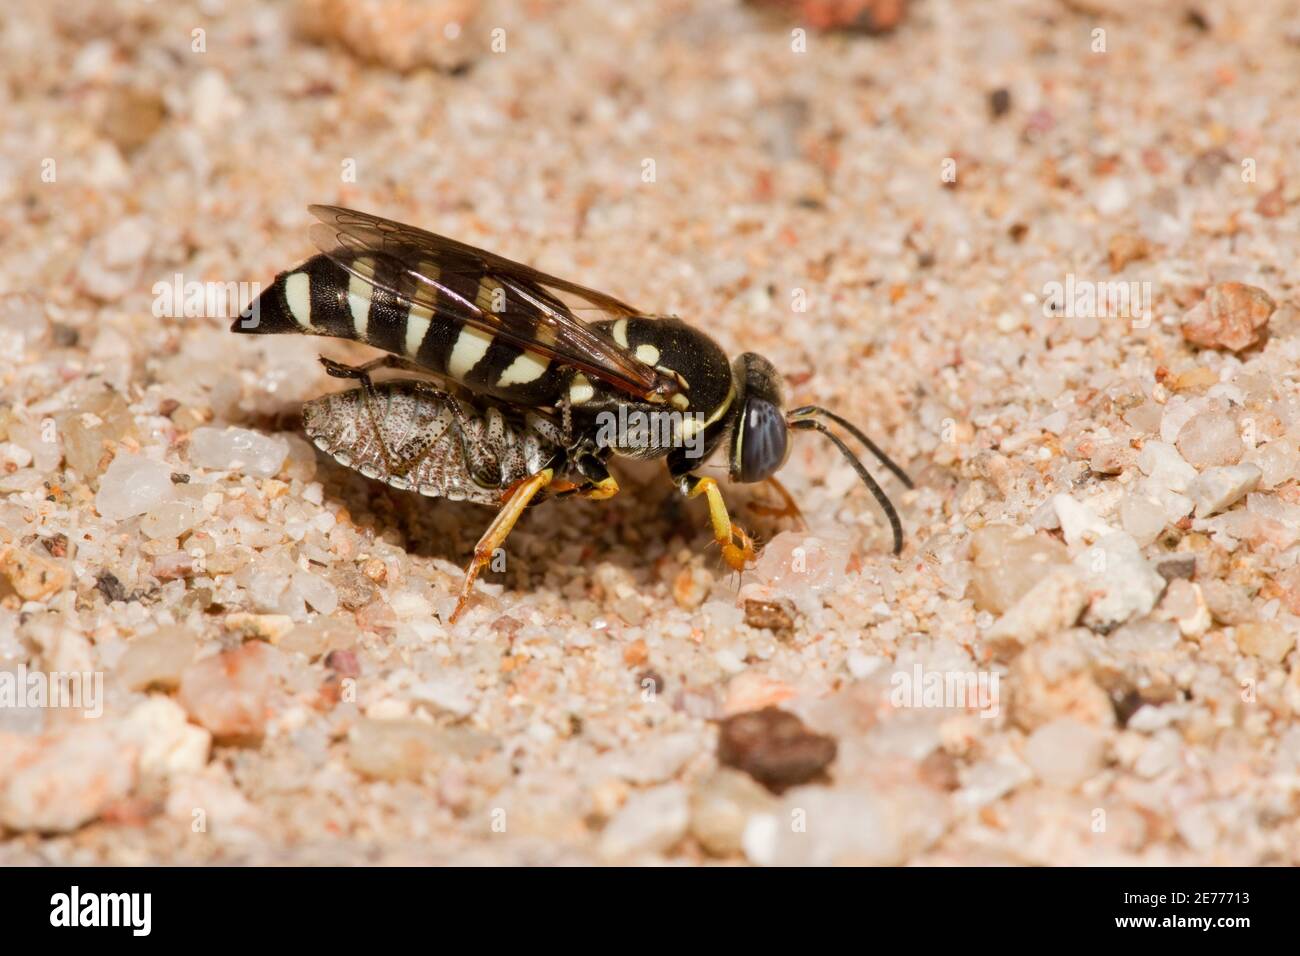 Unidentified Sand Wasp female, Bicyrtes sp., Crabronidae. Carrying paralyzed Pentatomid bug while reopening nesting burrow. Stock Photo